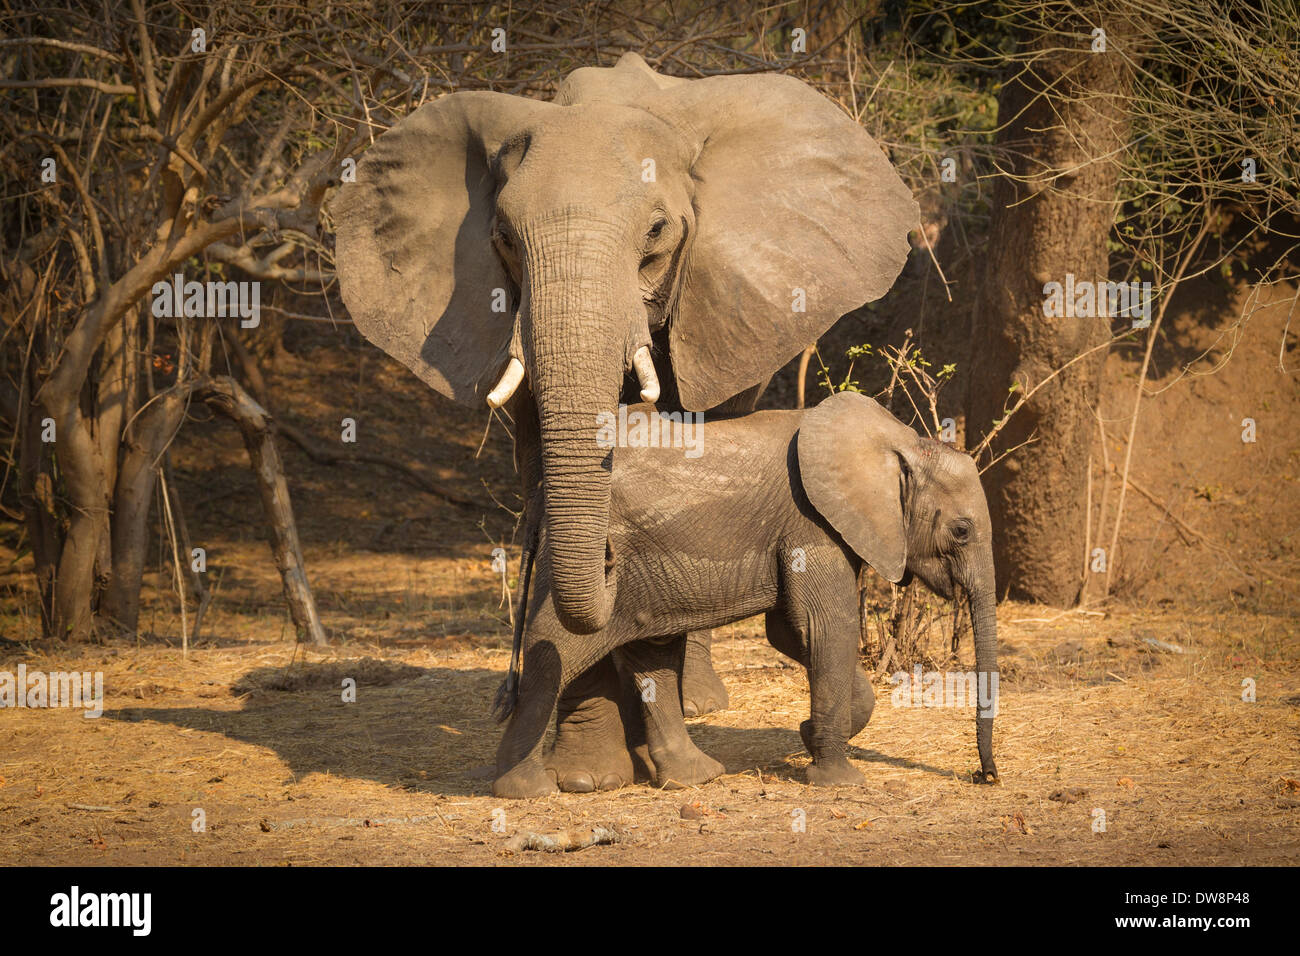 Zambia, Lower Zambezi National Park, l'elefante africano (Loxodonta africana) con piedi di vitello in modalità di protezione. Foto Stock